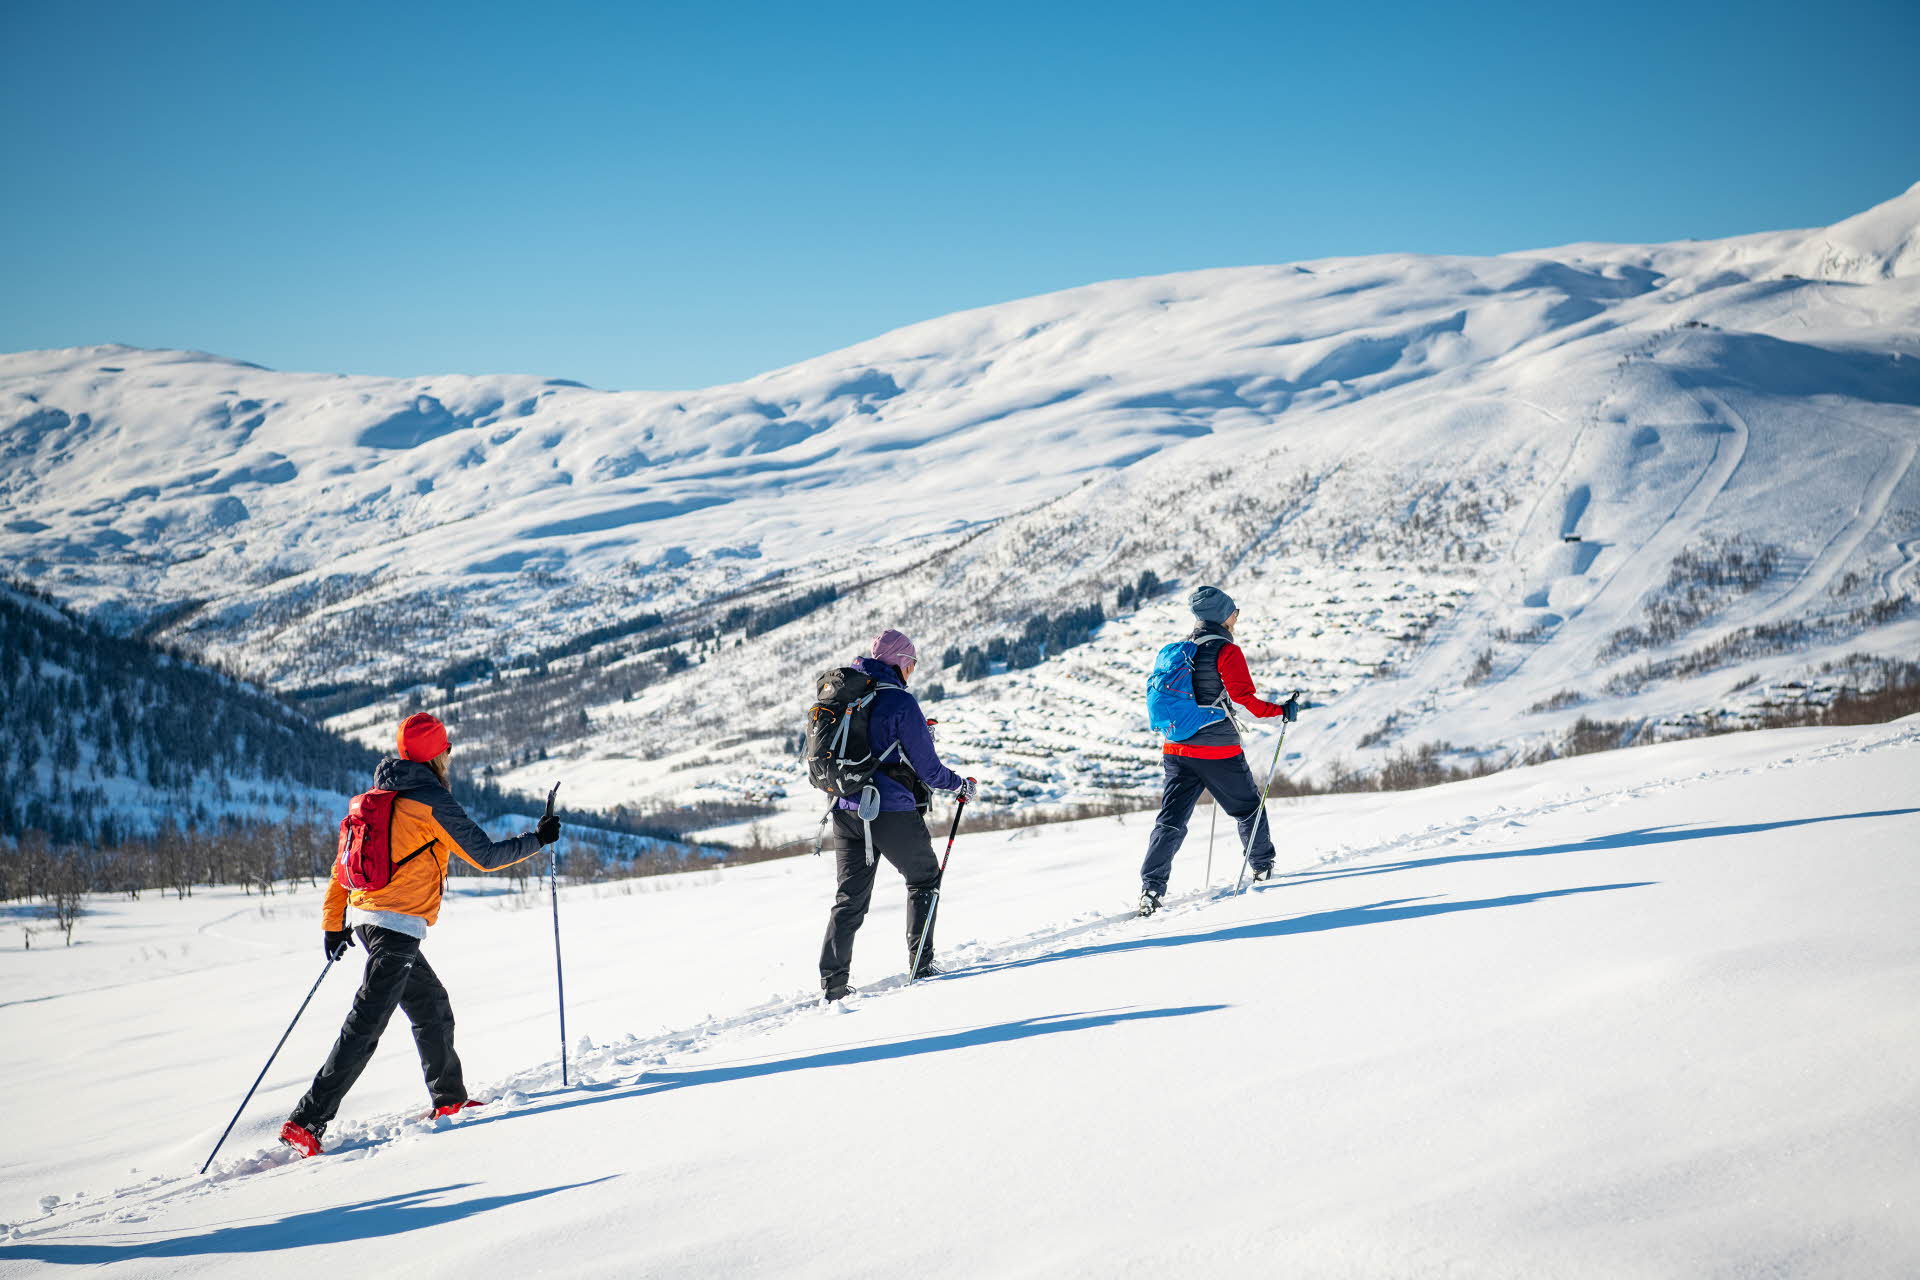 Drei Personen beim Backcountry-Skifahren in einer Reihe, mit dem Bergresort Myrkdalen im Hintergrund.